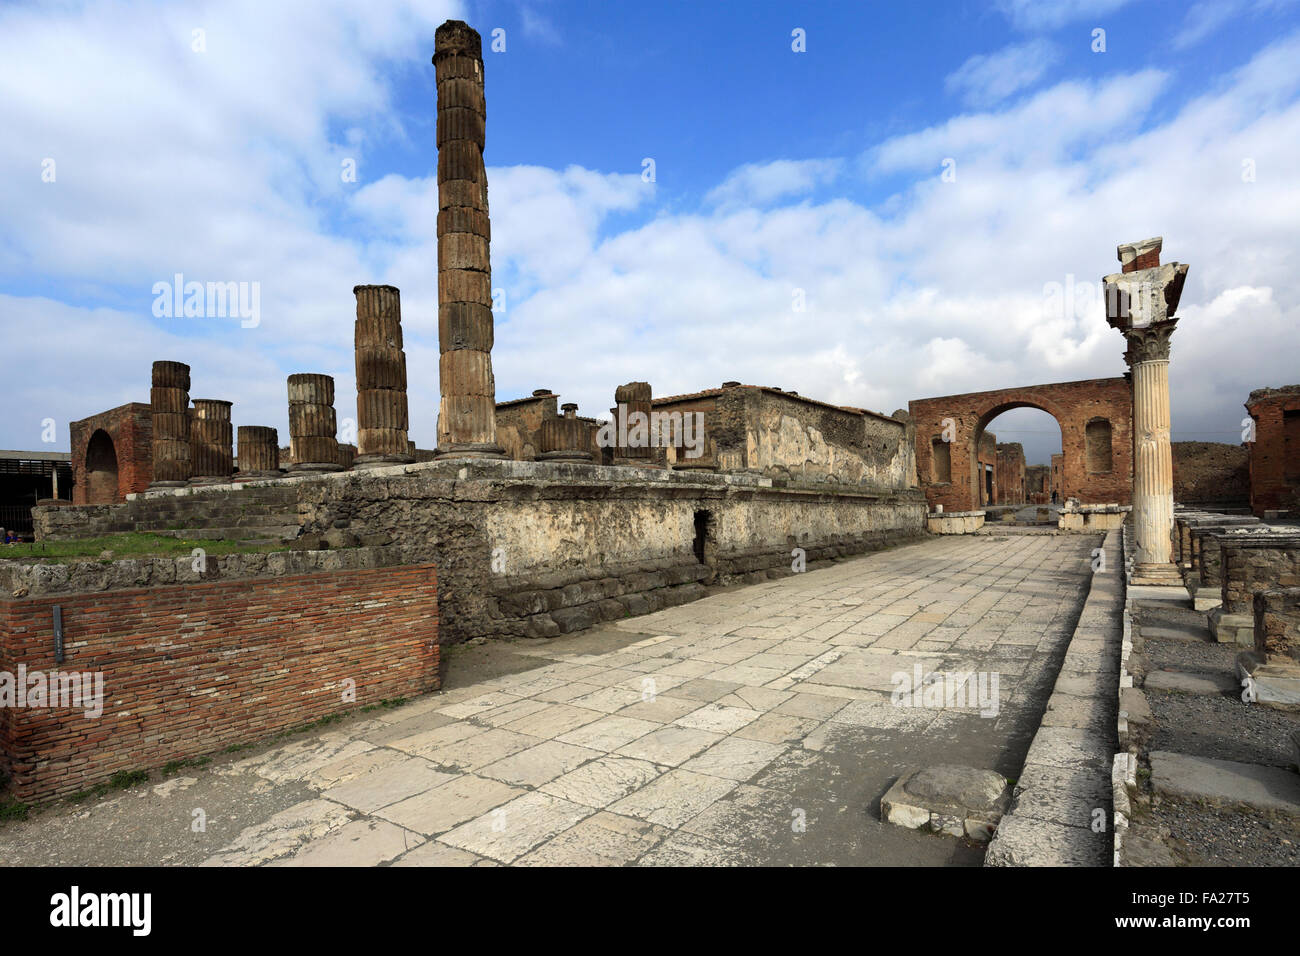 El Templo de Júpiter, Pompeya, la ciudad romana sepultada en lava, cerca de la ciudad de Nápoles, la Lista del Patrimonio Mundial de la UNESCO de 1997, región de Campania Foto de stock